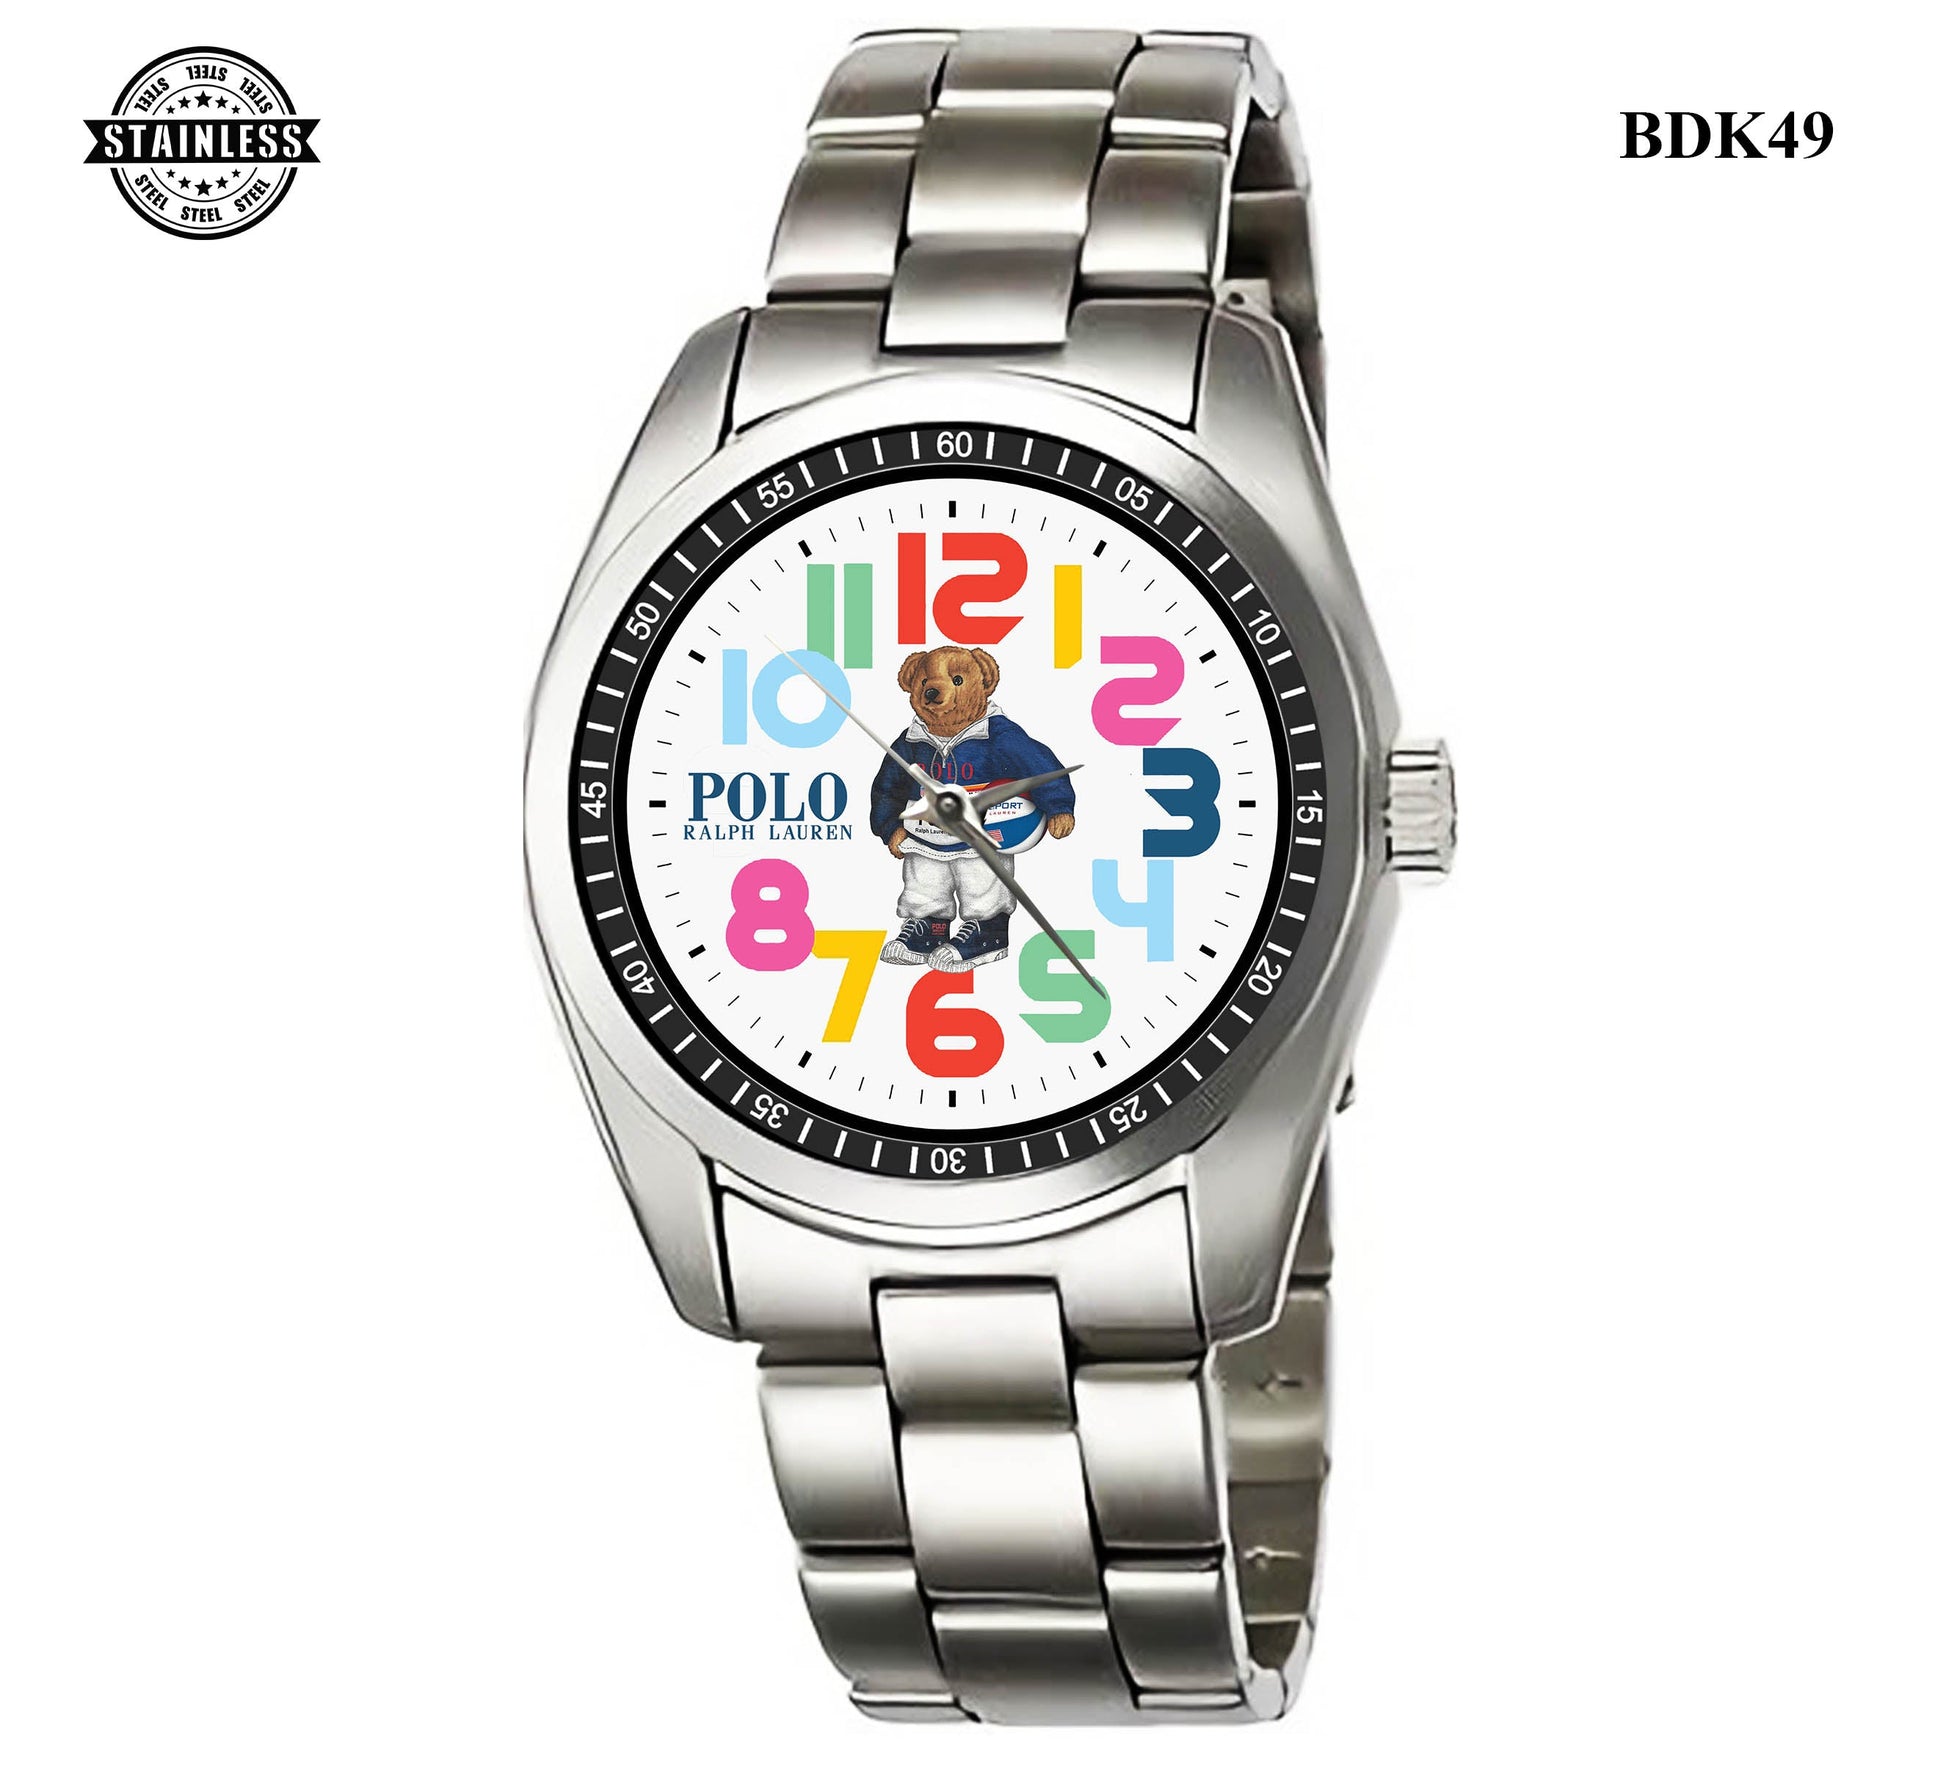 Polo Ralph Lauren Bear Sport Metal Watch Bdk49-7